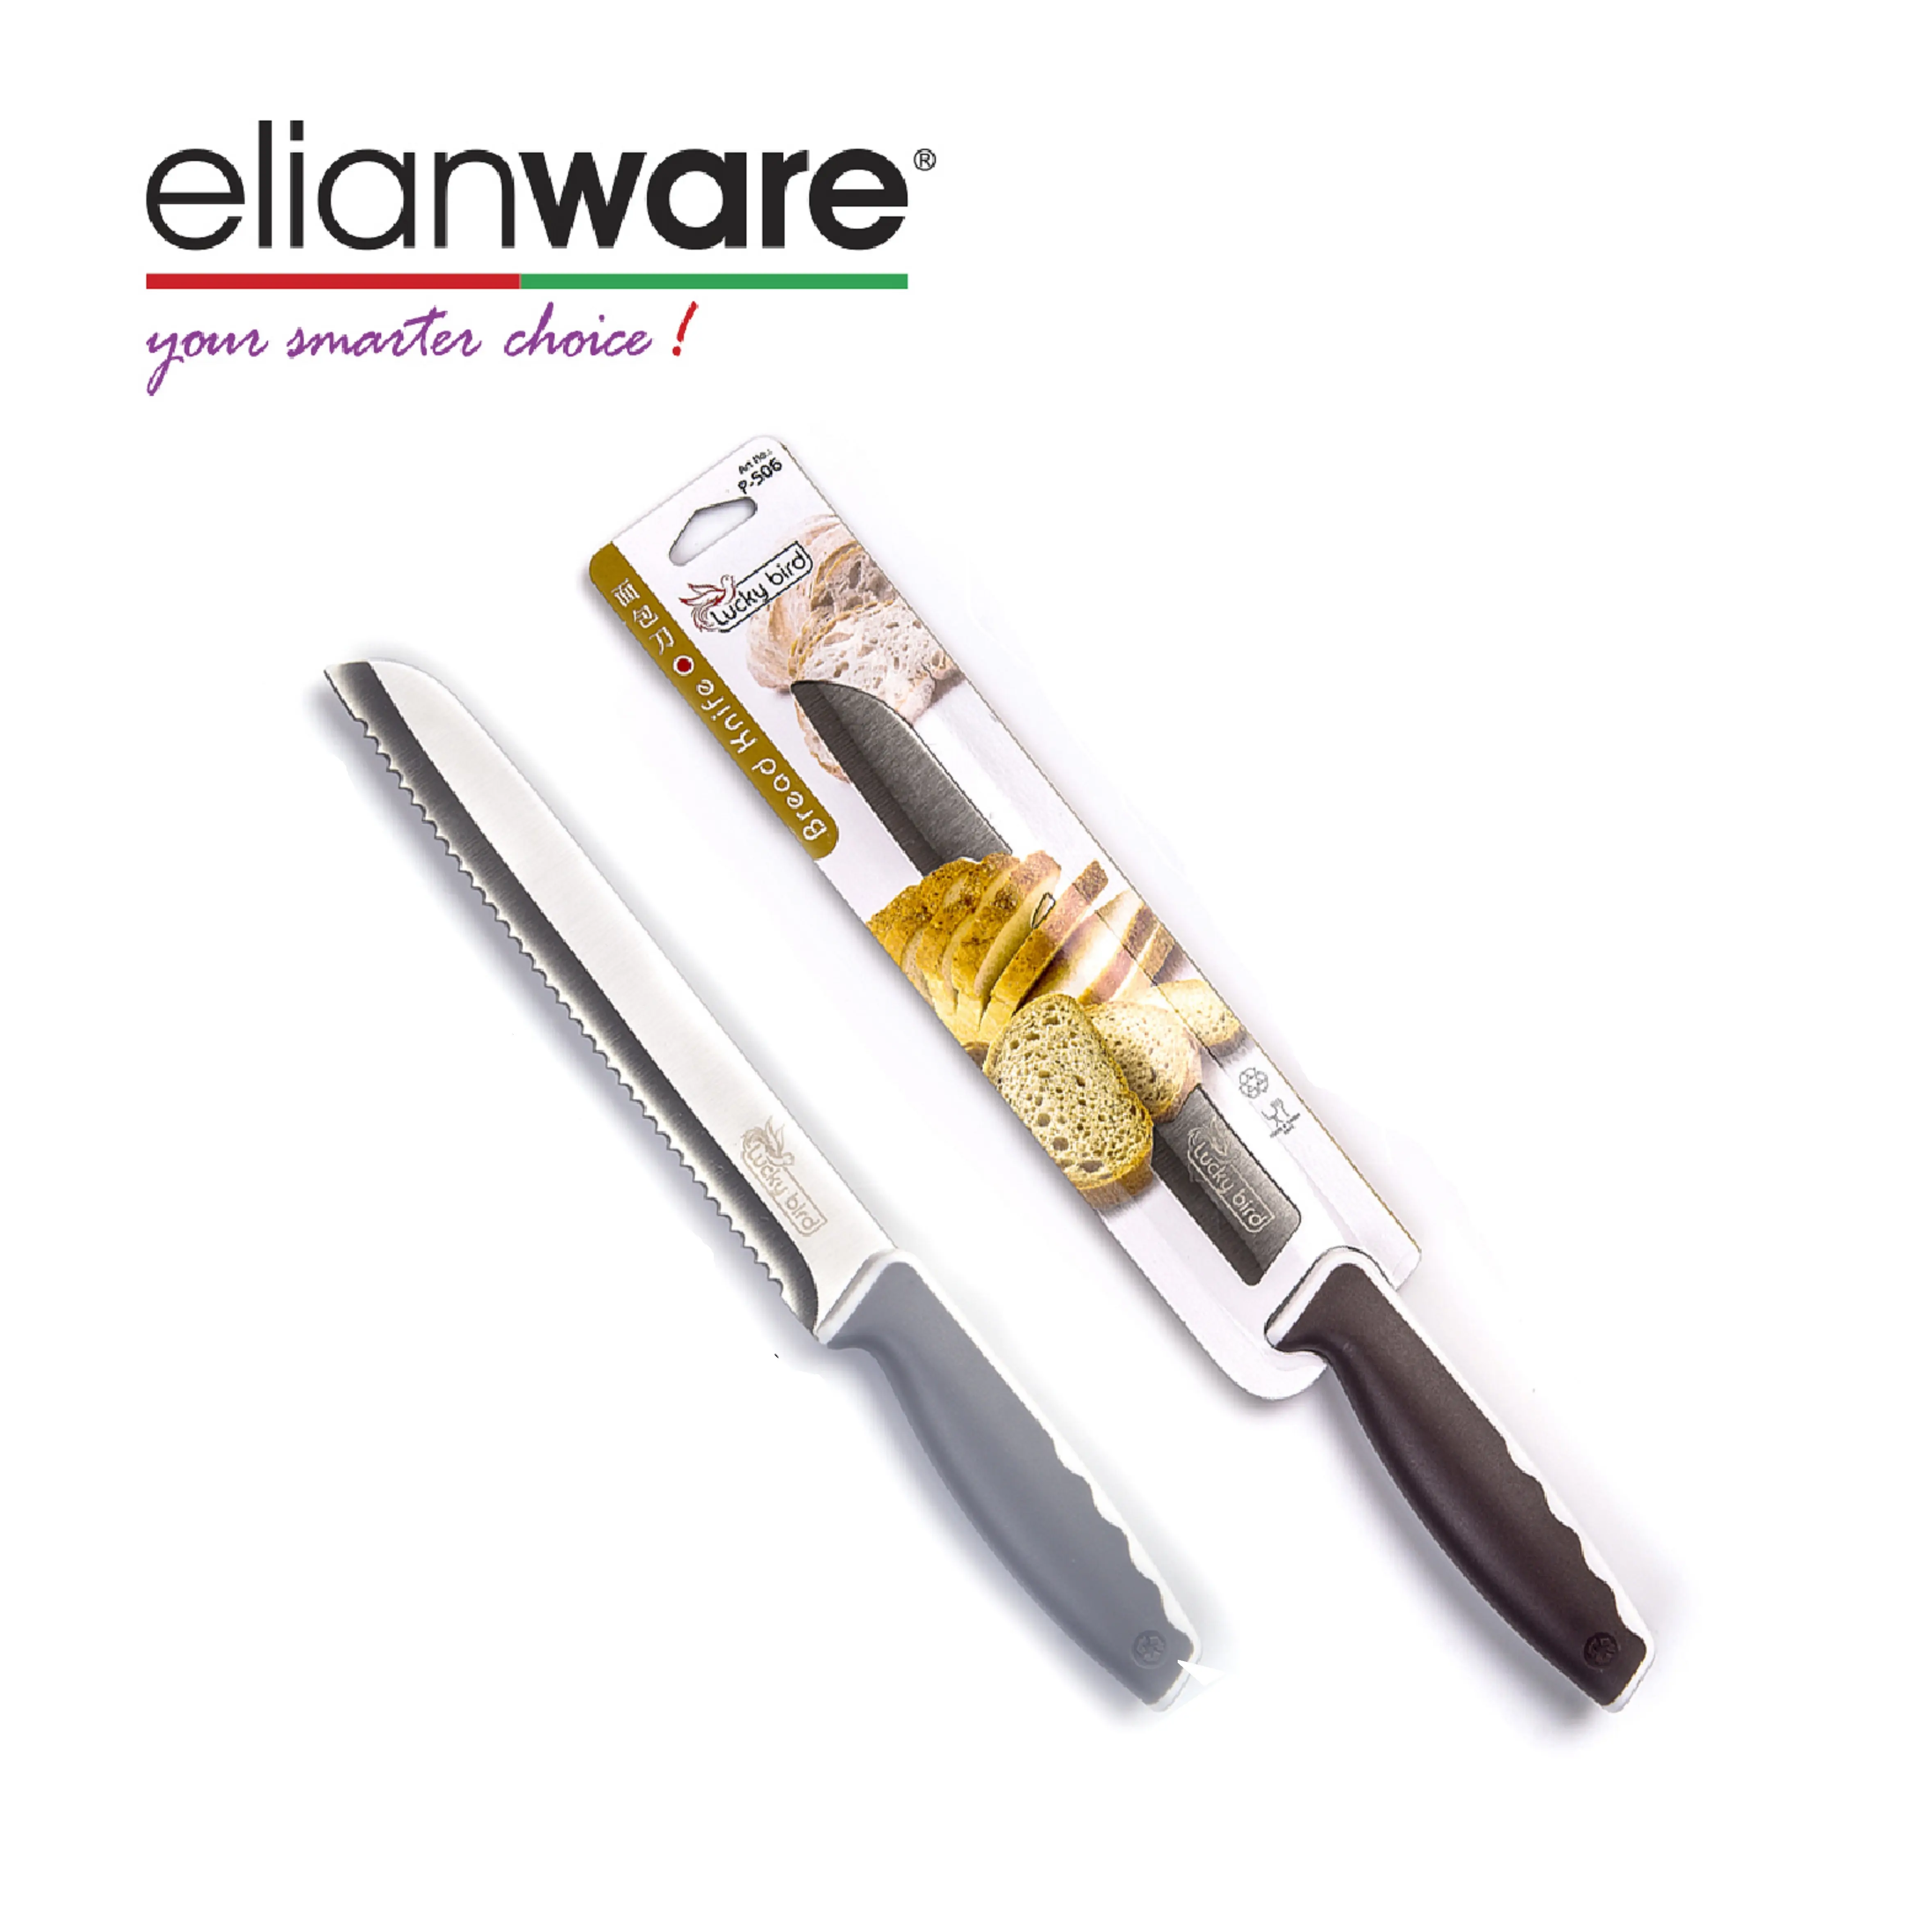 Eilanwareプラスチック人間工学に基づいたハンドル付きの高品質ステンレス鋼パンスライサーナイフ